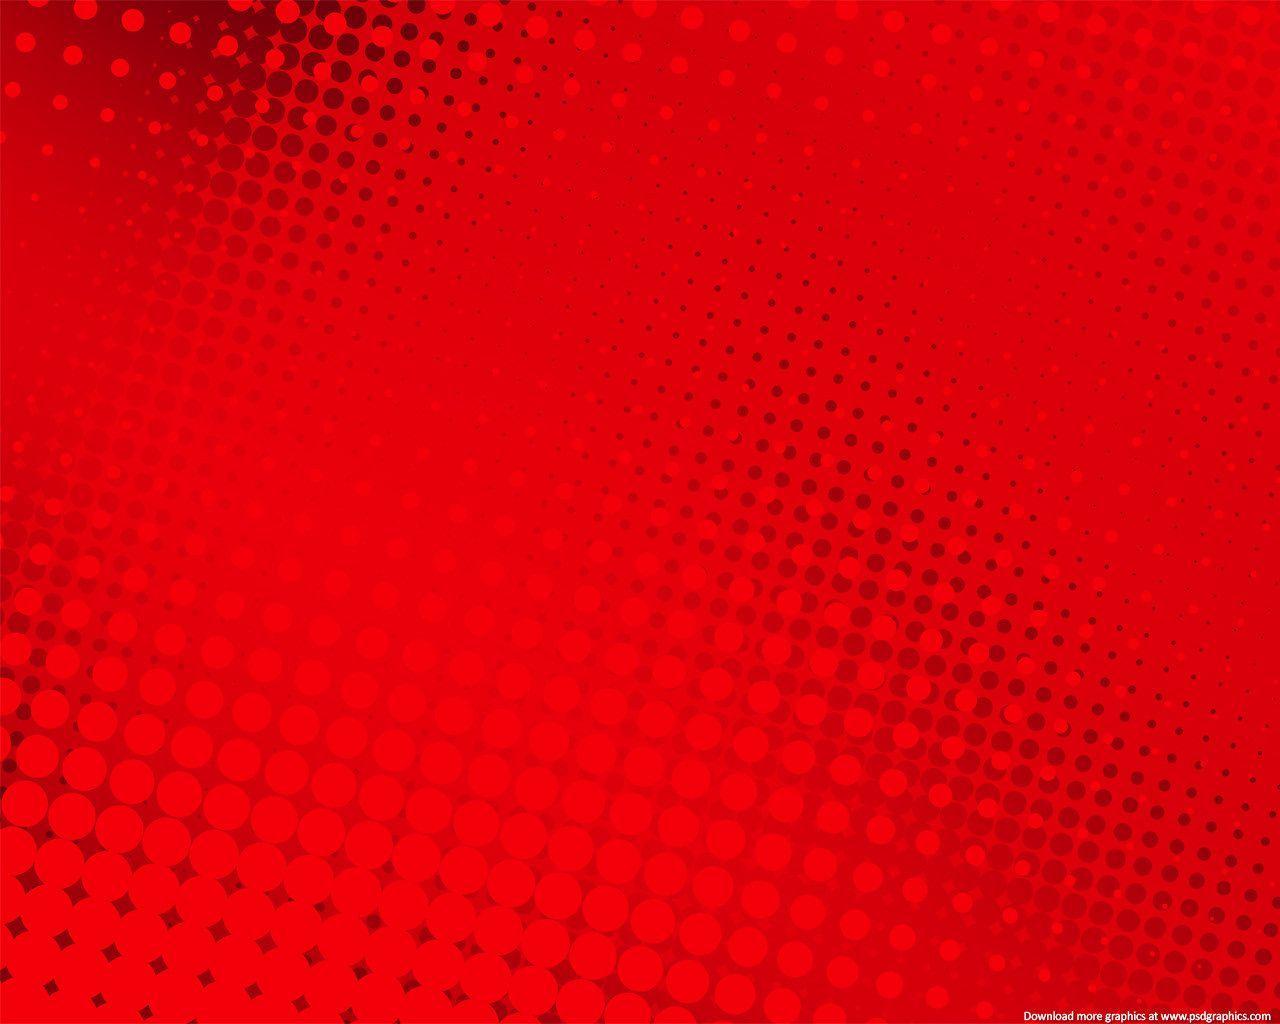 Để có một hình nền độc đáo và đẹp, hãy đến với chúng tôi. Red Wallpapers - Top Những Hình Ảnh Đẹp Background Red HD mang đến cho bạn những bức hình nền đẹp nhất với thế giới màu đỏ tươi sáng. Hãy lựa chọn cho mình một bức hình và cảm nhận sự khác biệt.